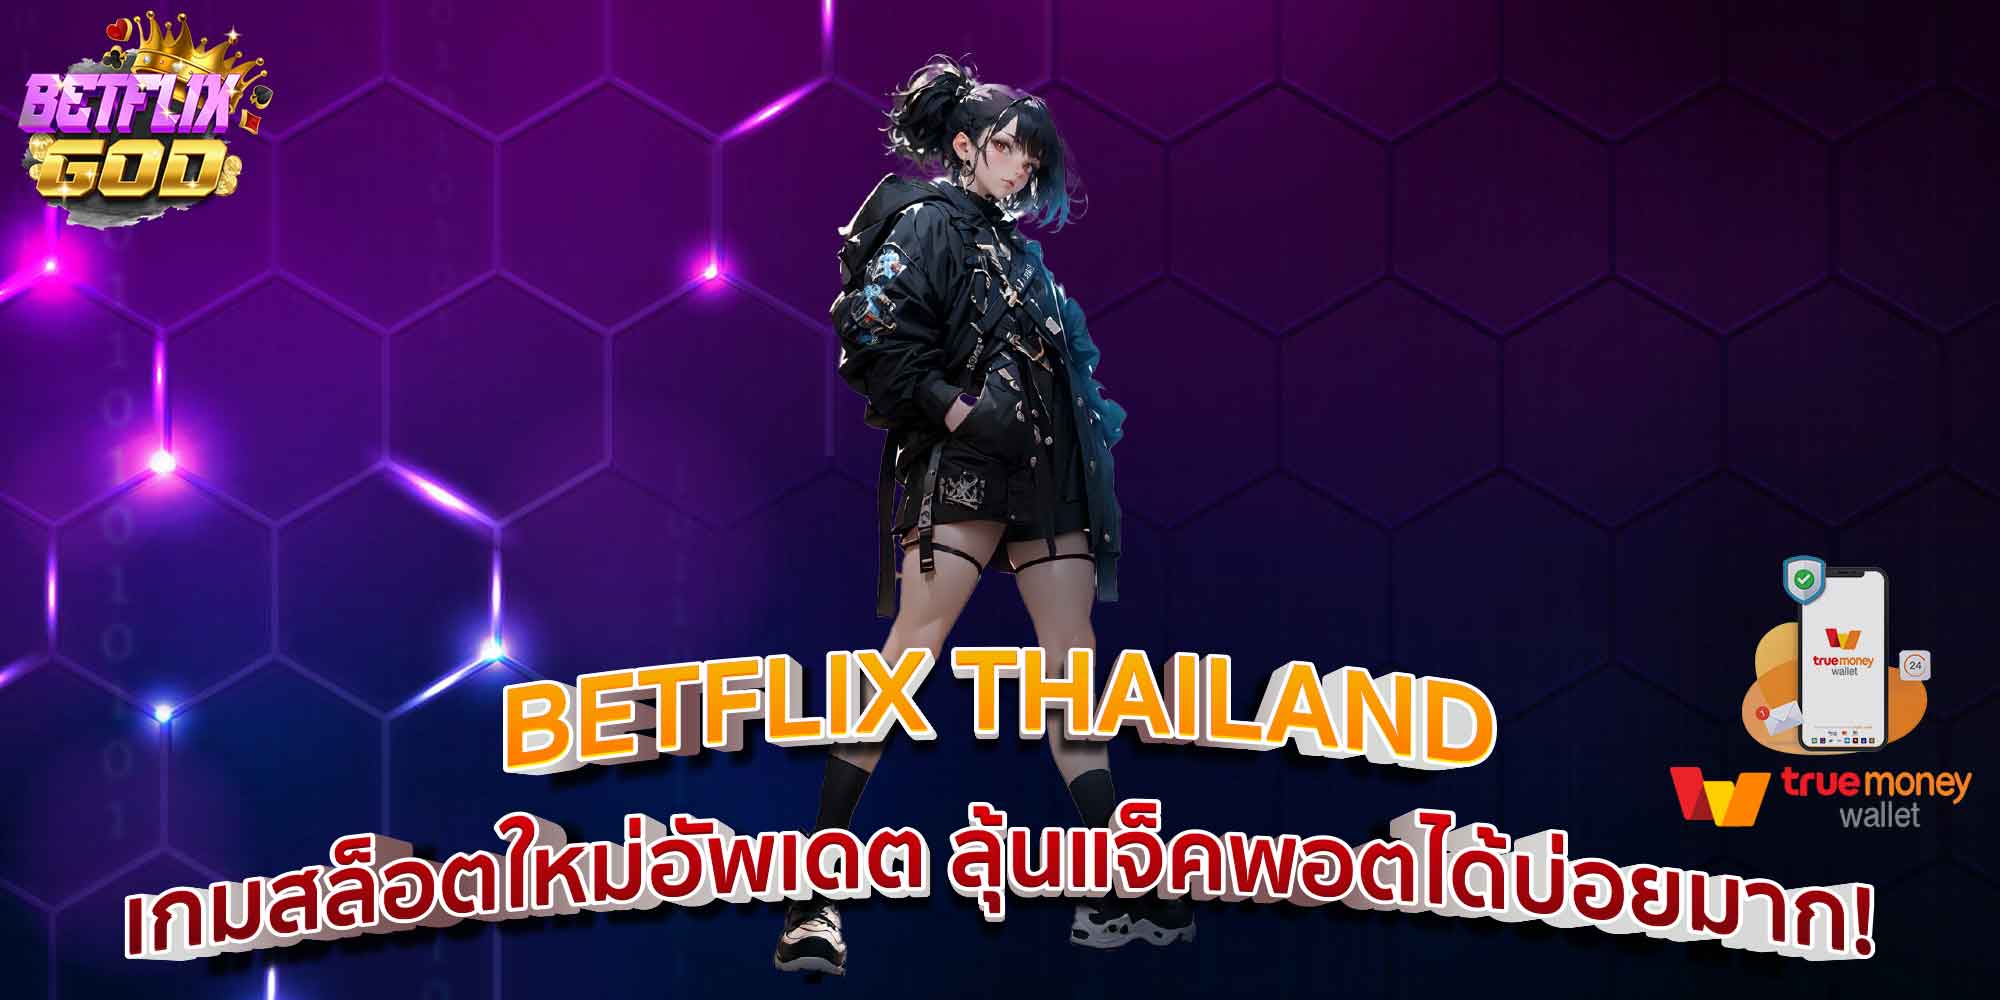 BETFLIX THAILAND เกมสล็อตใหม่อัพเดต ลุ้นแจ็คพอตได้บ่อยมาก!